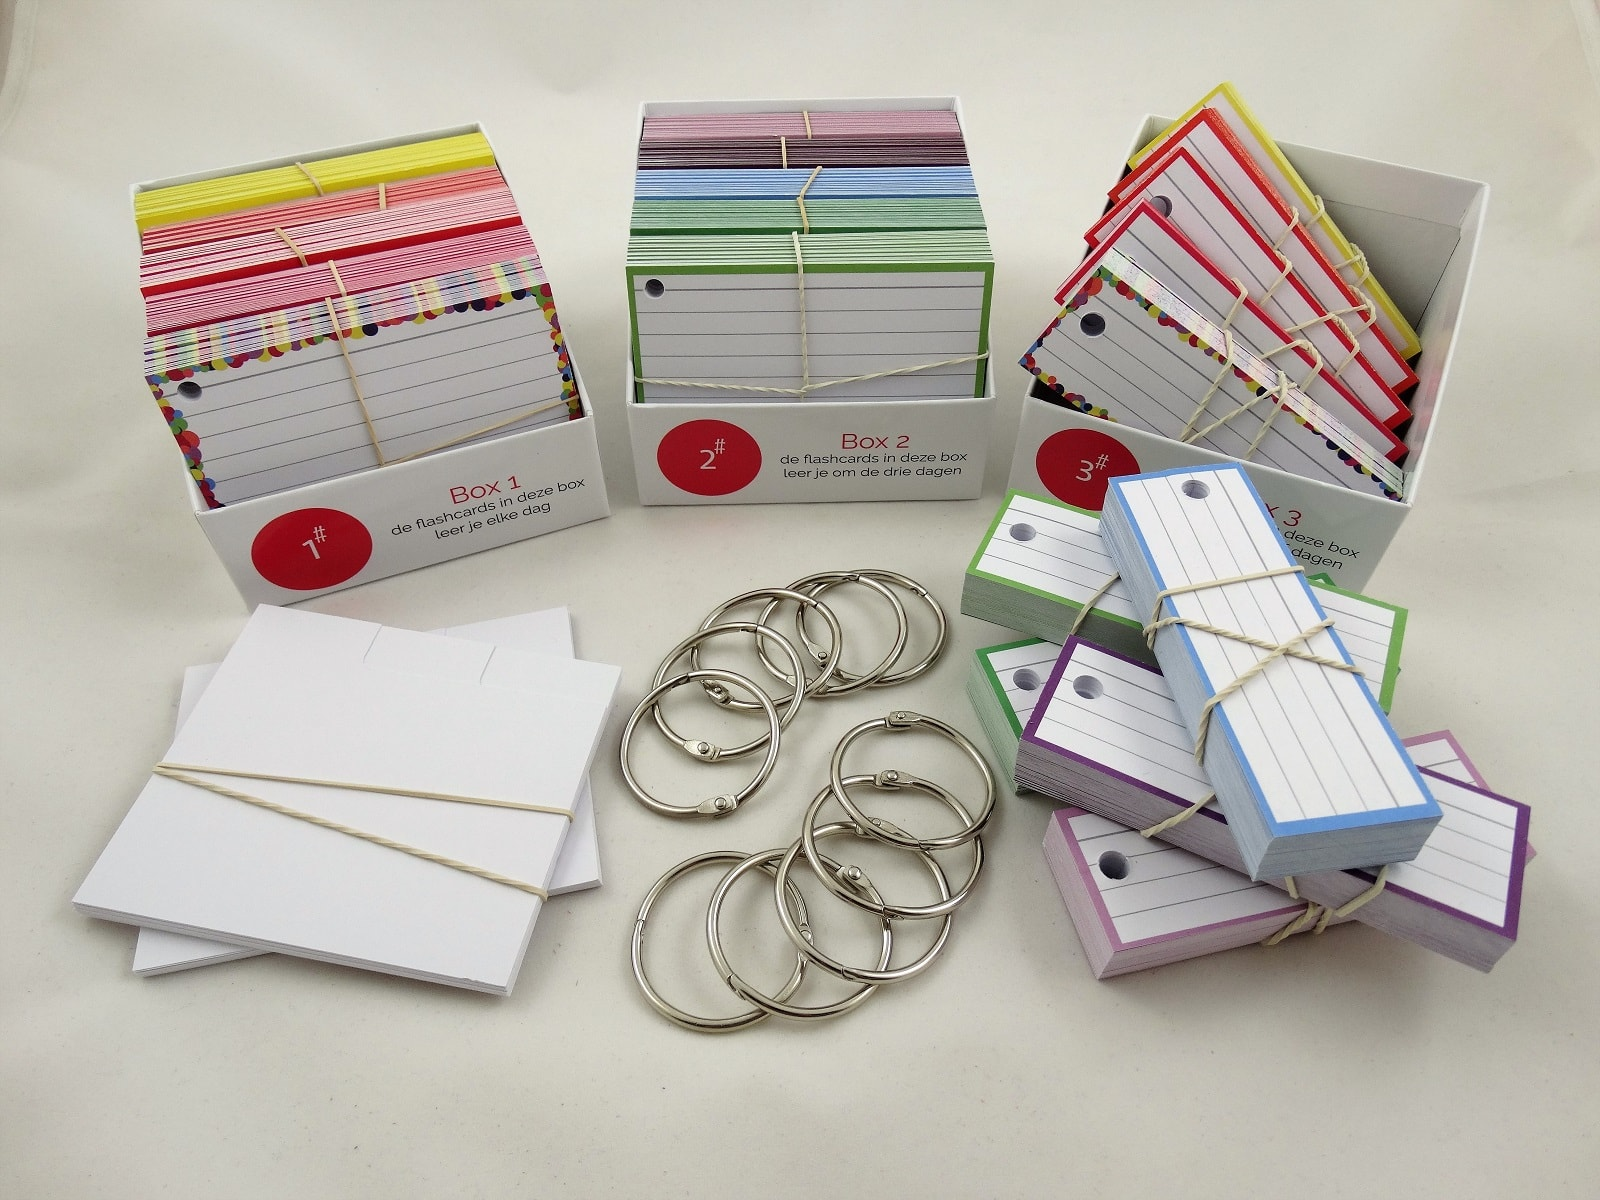 Пример того, как могут выглядеть настоящие (физические) карточки в распределительных коробках